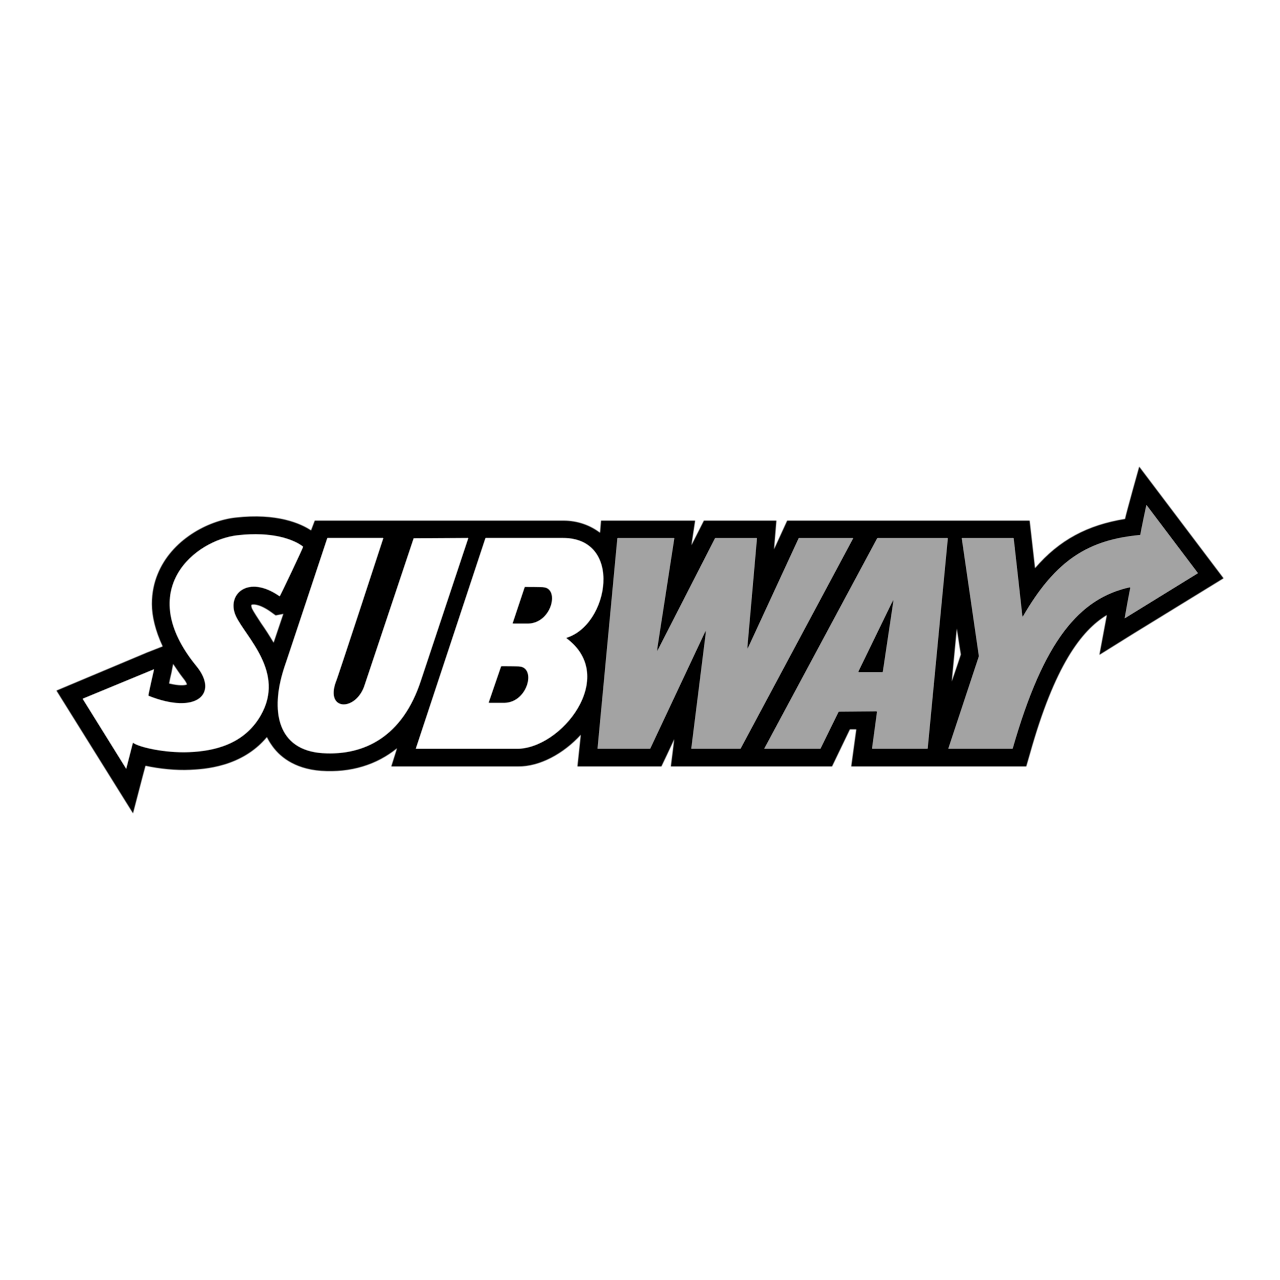 Subway logo image